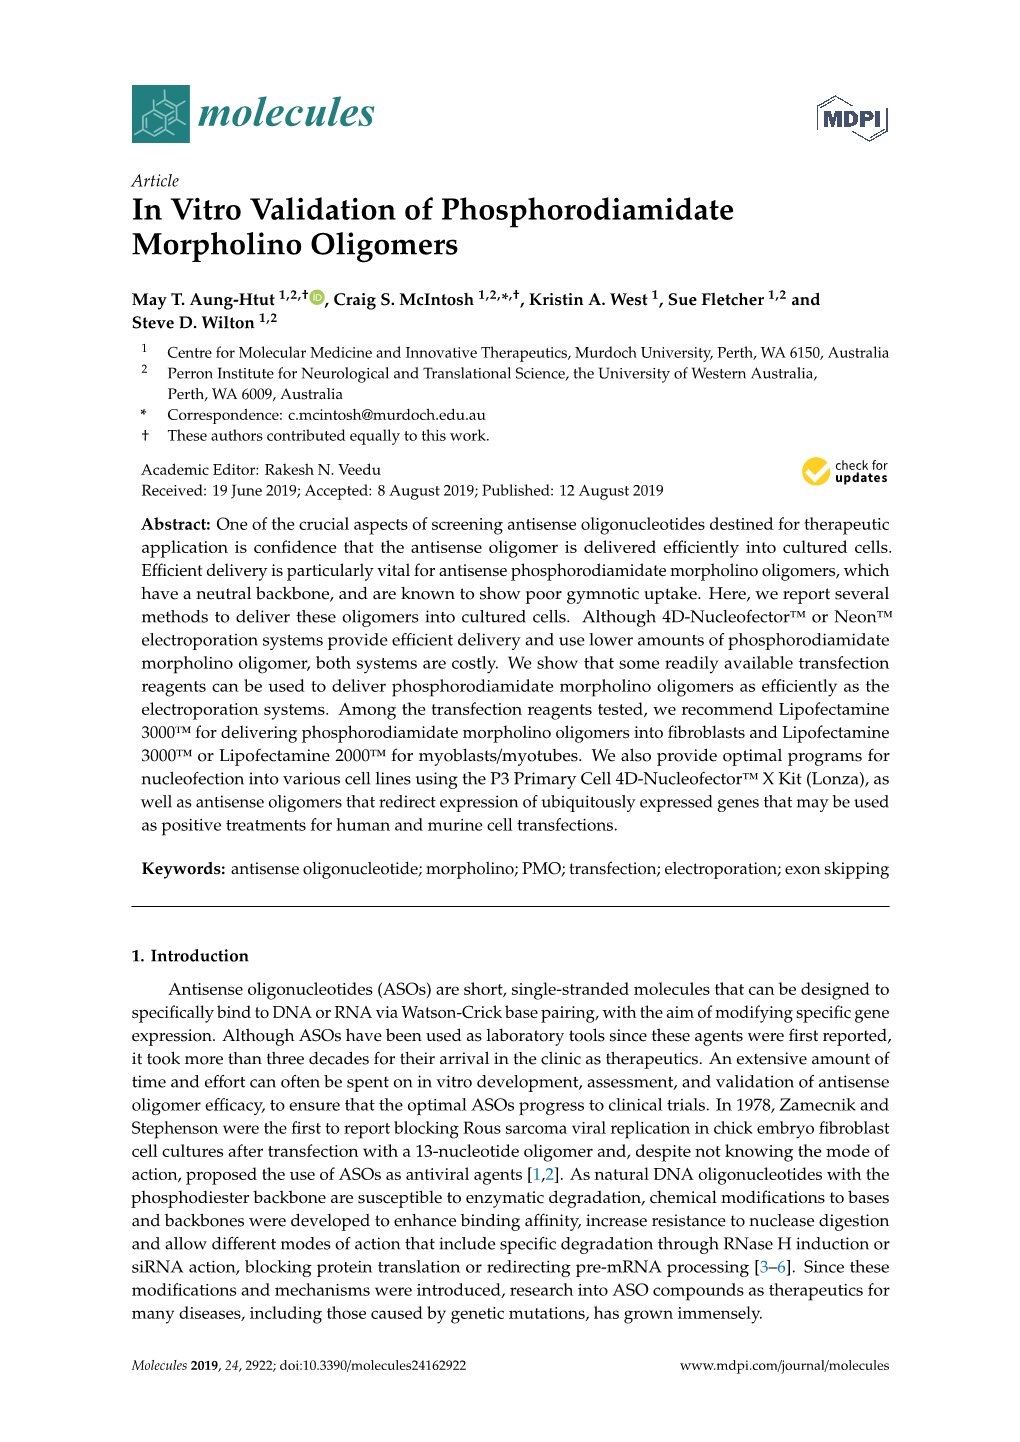 In Vitro Validation of Phosphorodiamidate Morpholino Oligomers